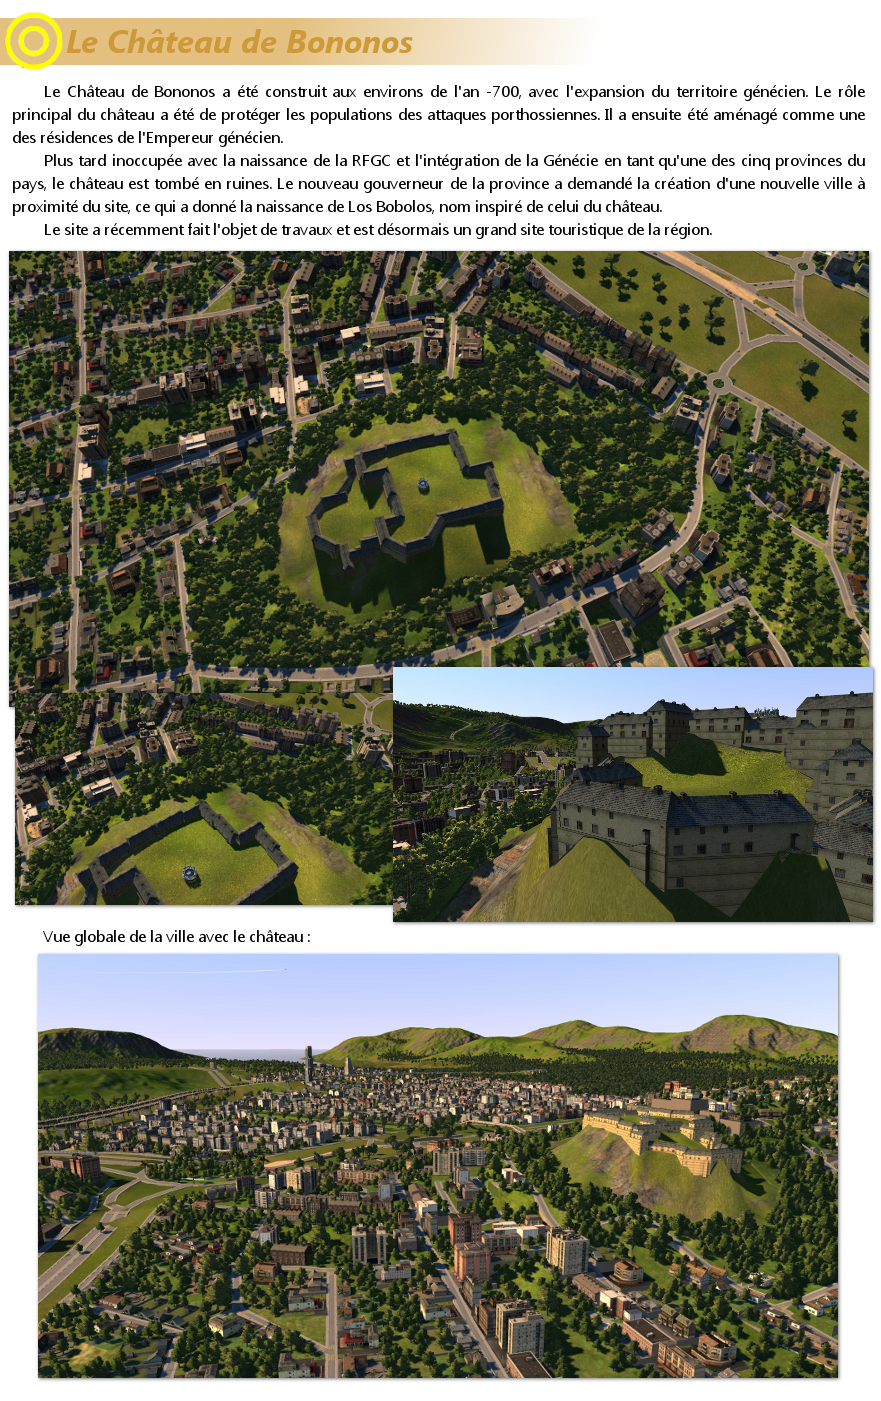 los bobolos - [CXL] Los Bobolos - Province de Génécie - Château / Esplanades (10/07/2011) - Page 34 110710060502509438451375